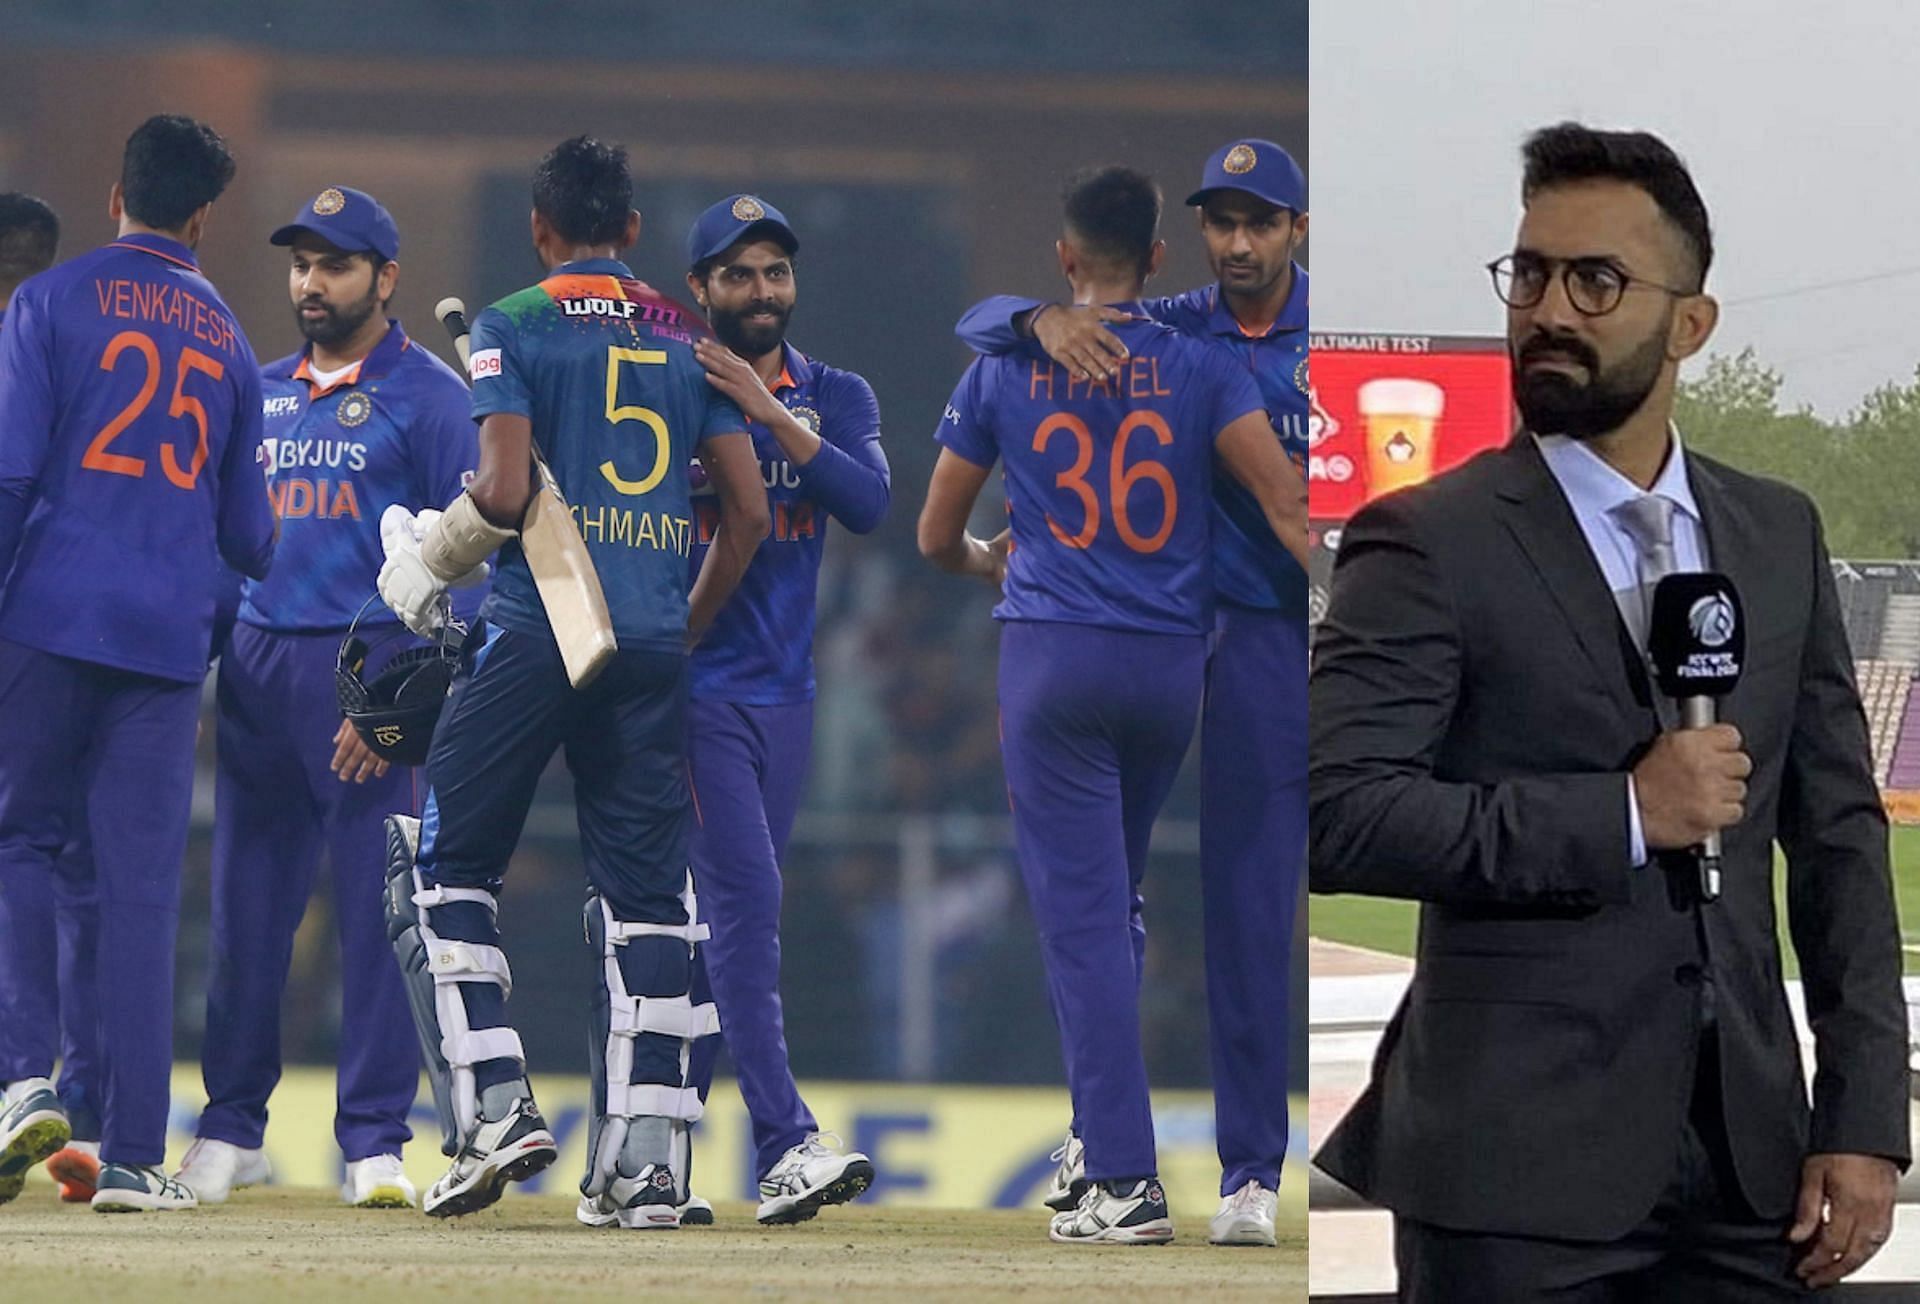 भारतीय टीम के खिलाड़ियों के परफॉर्मेंस की दिनेश कार्तिक ने तारीफ की